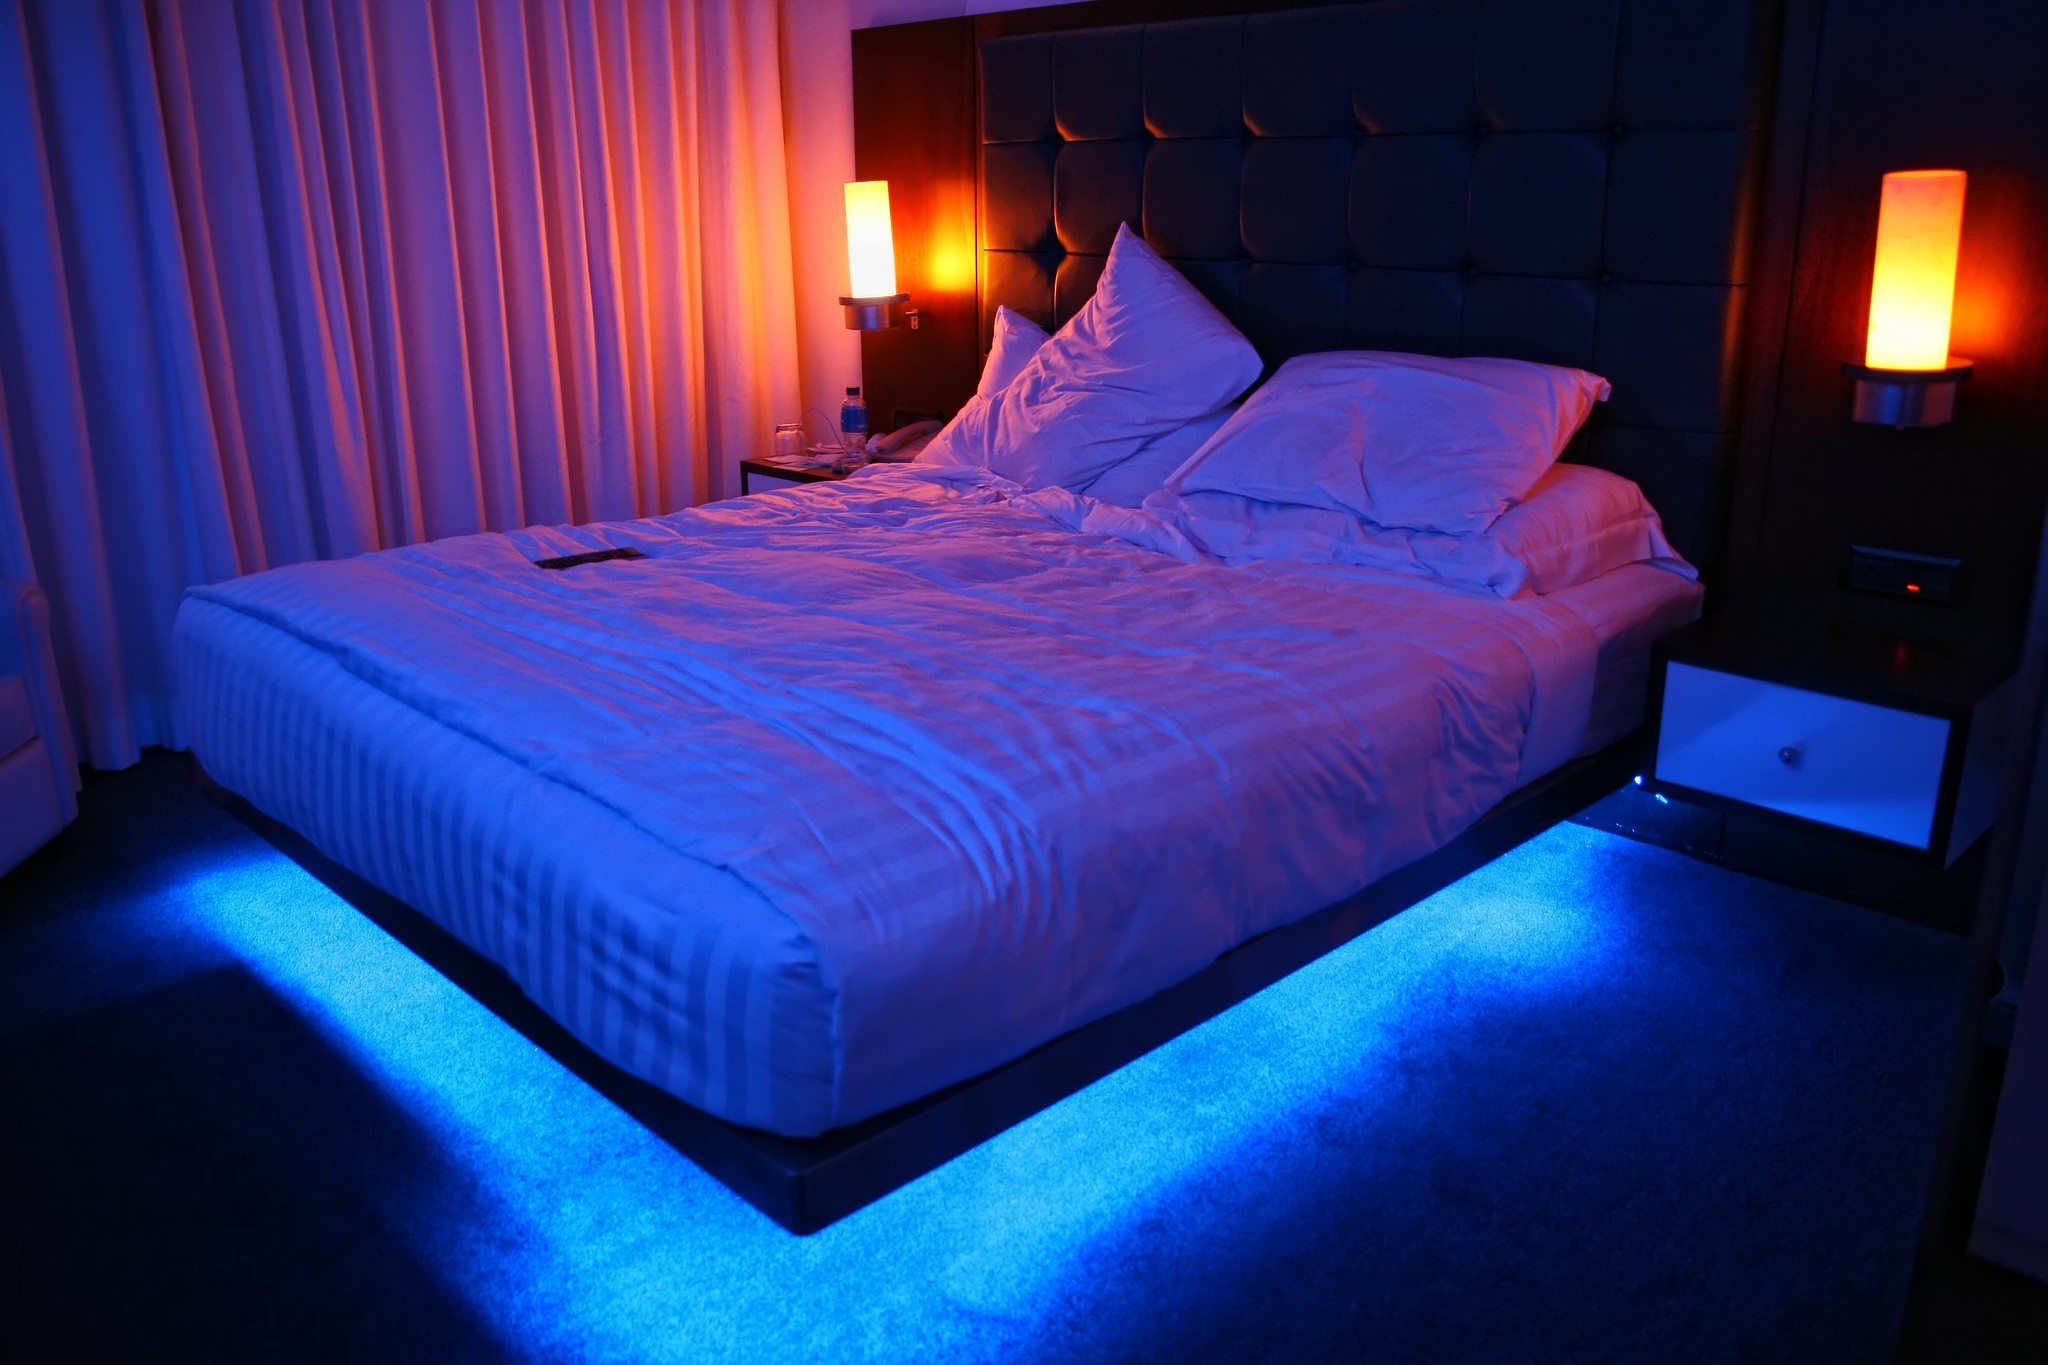 A luz de LED embaixo da cama é uma maneira inusitada de criar um clima especial no seu quarto